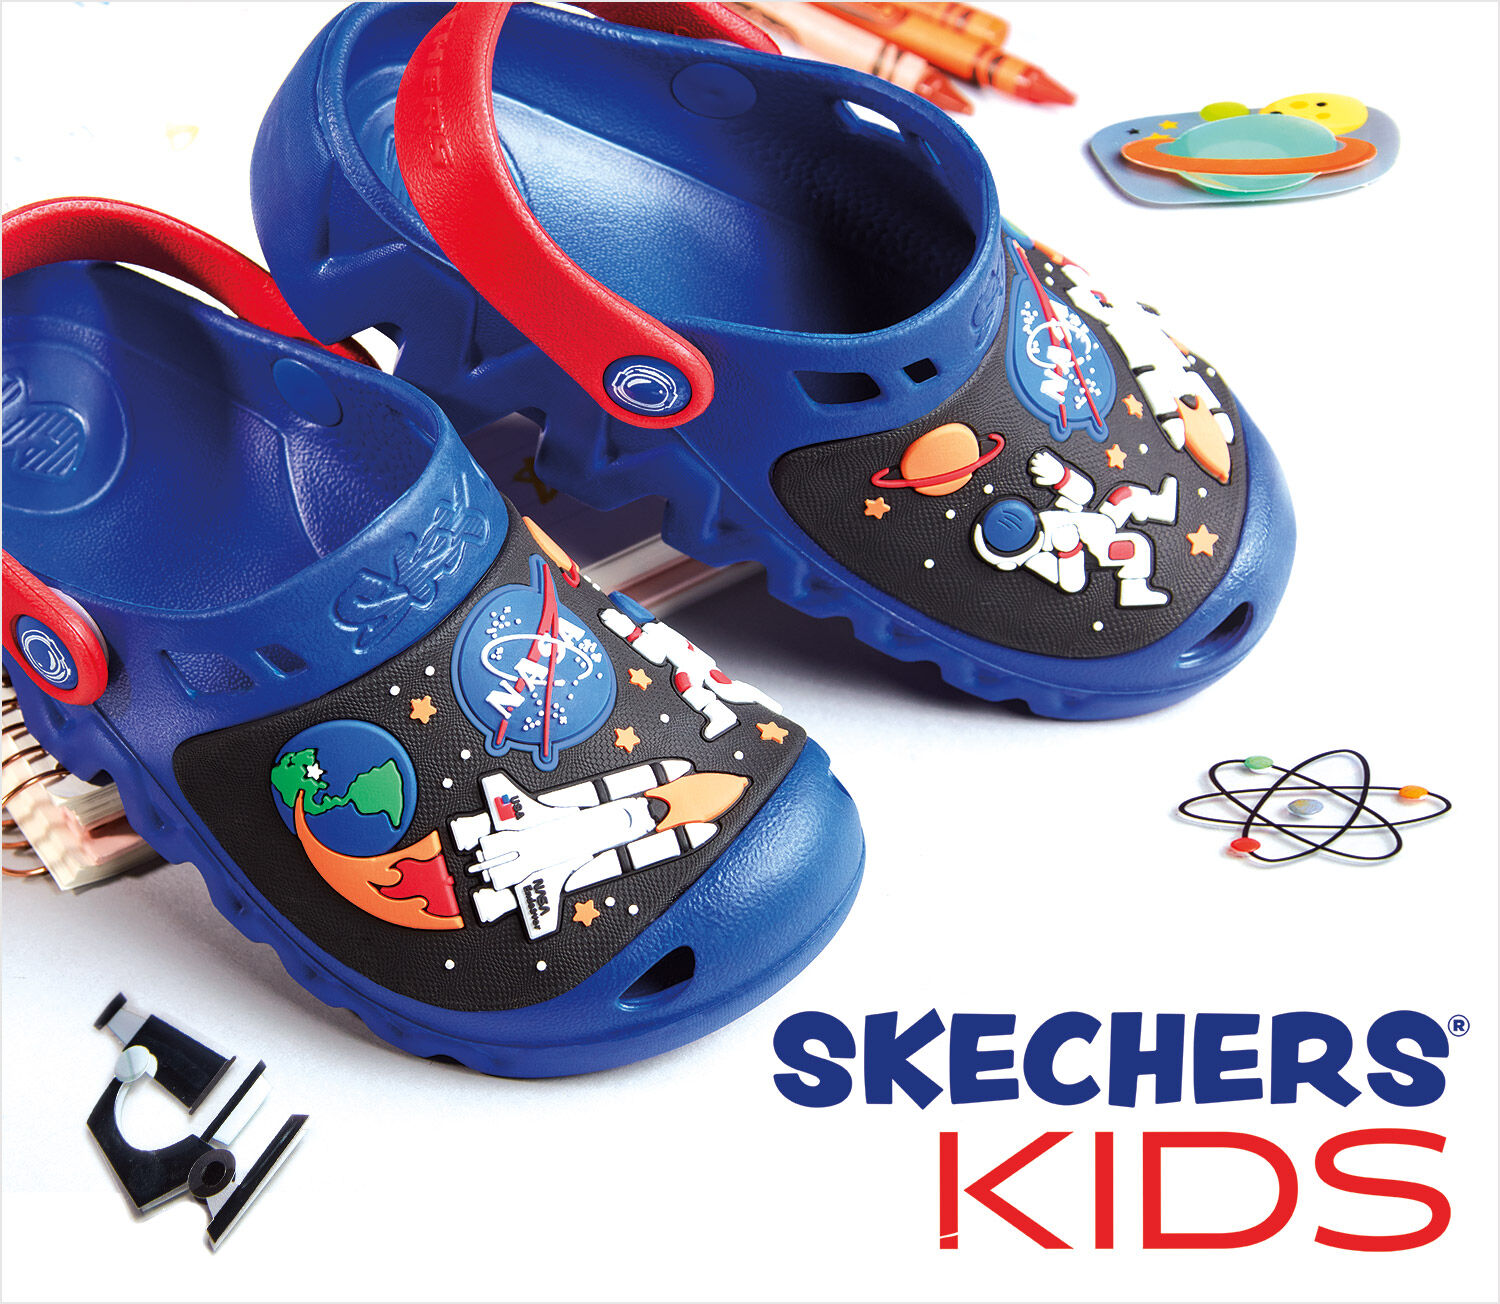 skechers for kids